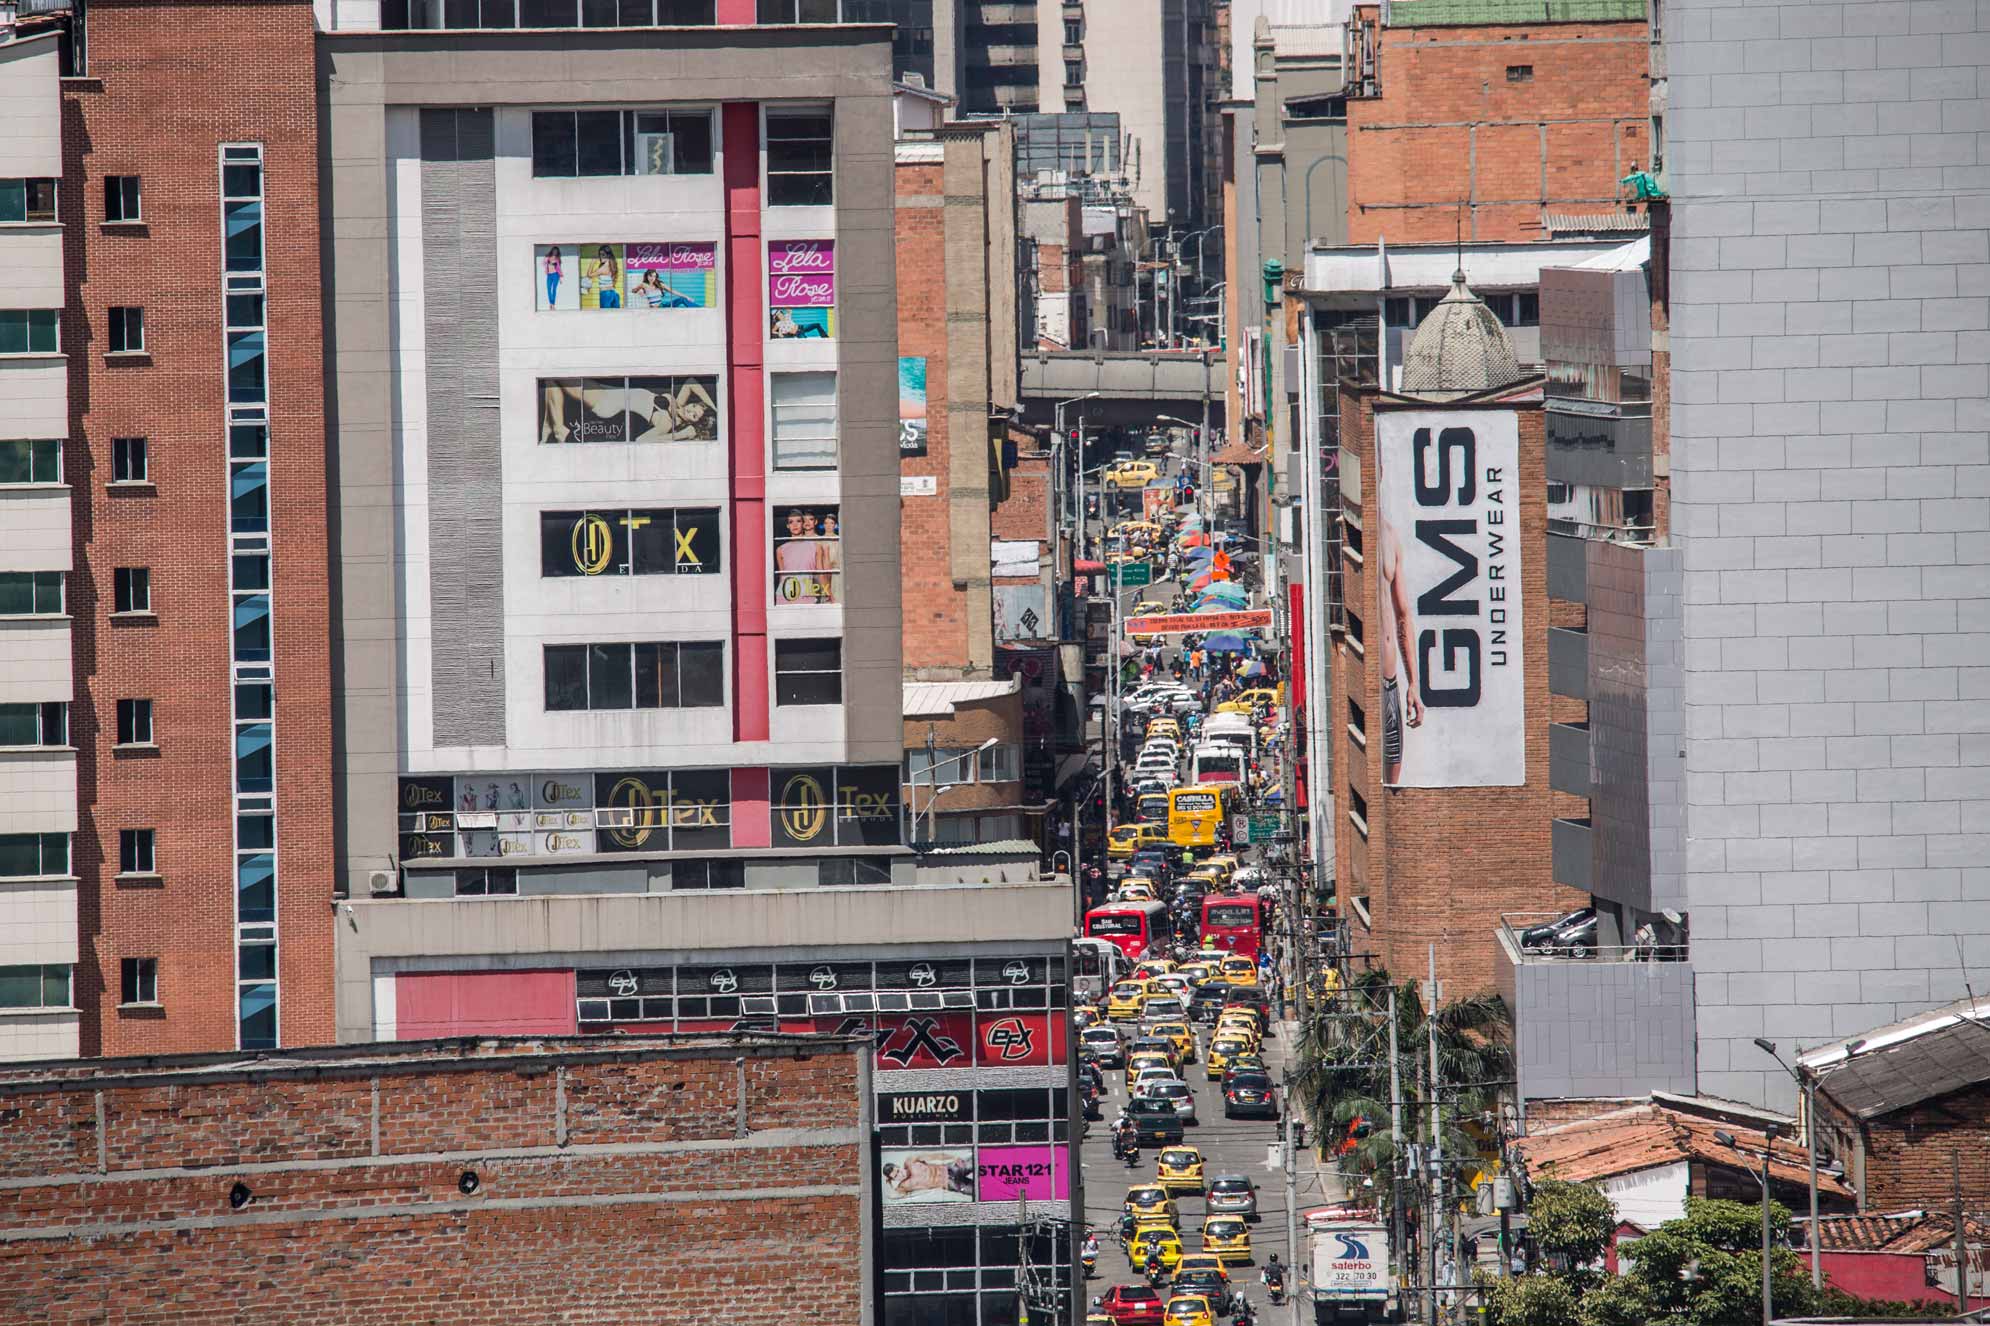 Maniquíes El Hueco - Representante Comercial en Medellín